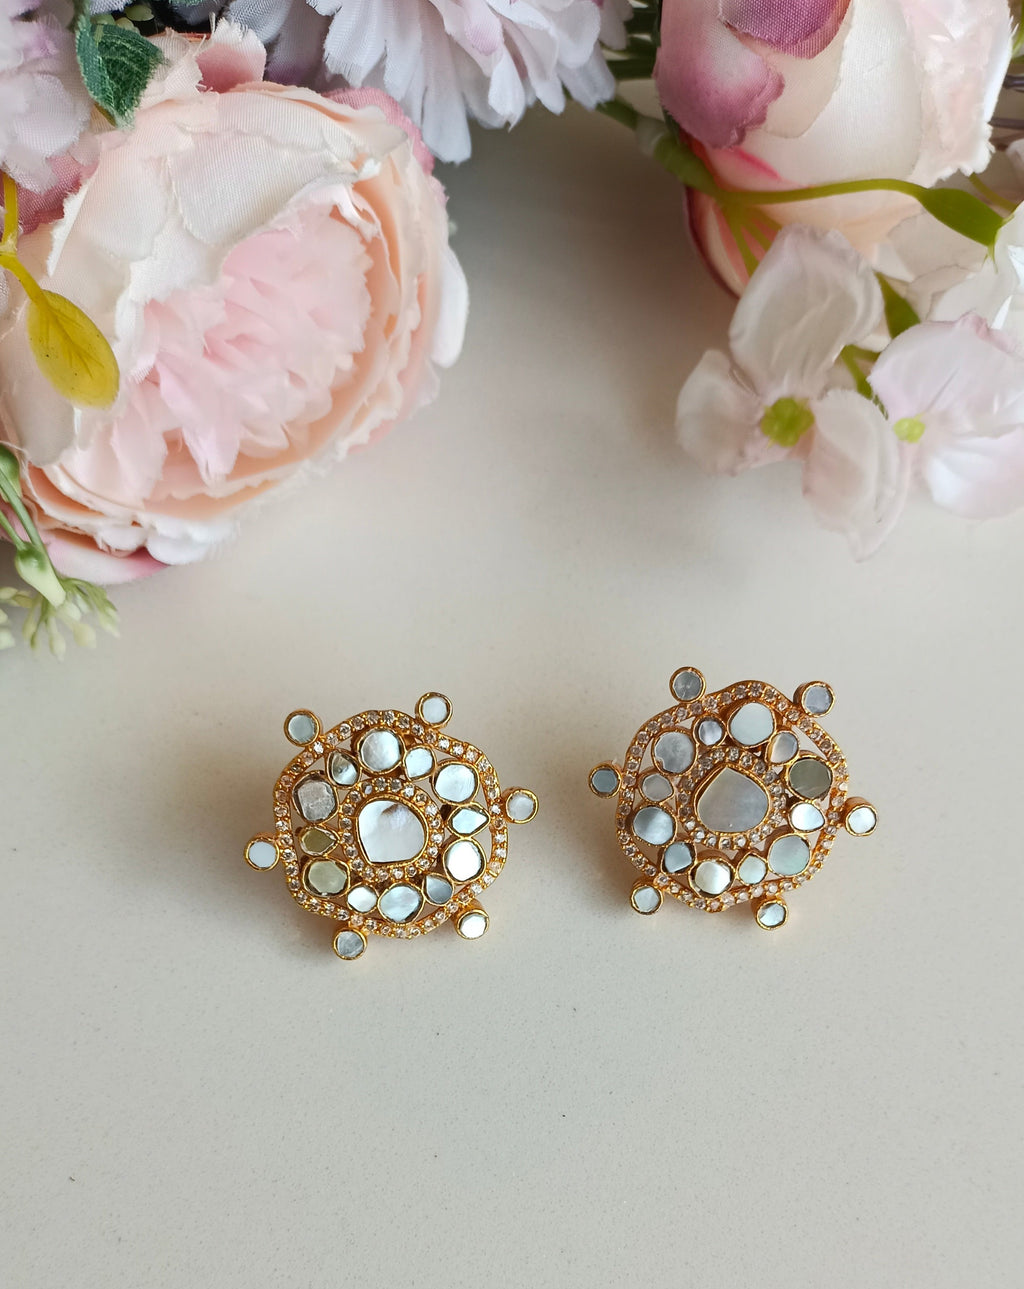 Small Pearl Earrings in Gold, Post Earrings , Hypoallergenic Earrings, Pearl  Earrings Simple and Pretty - Etsy